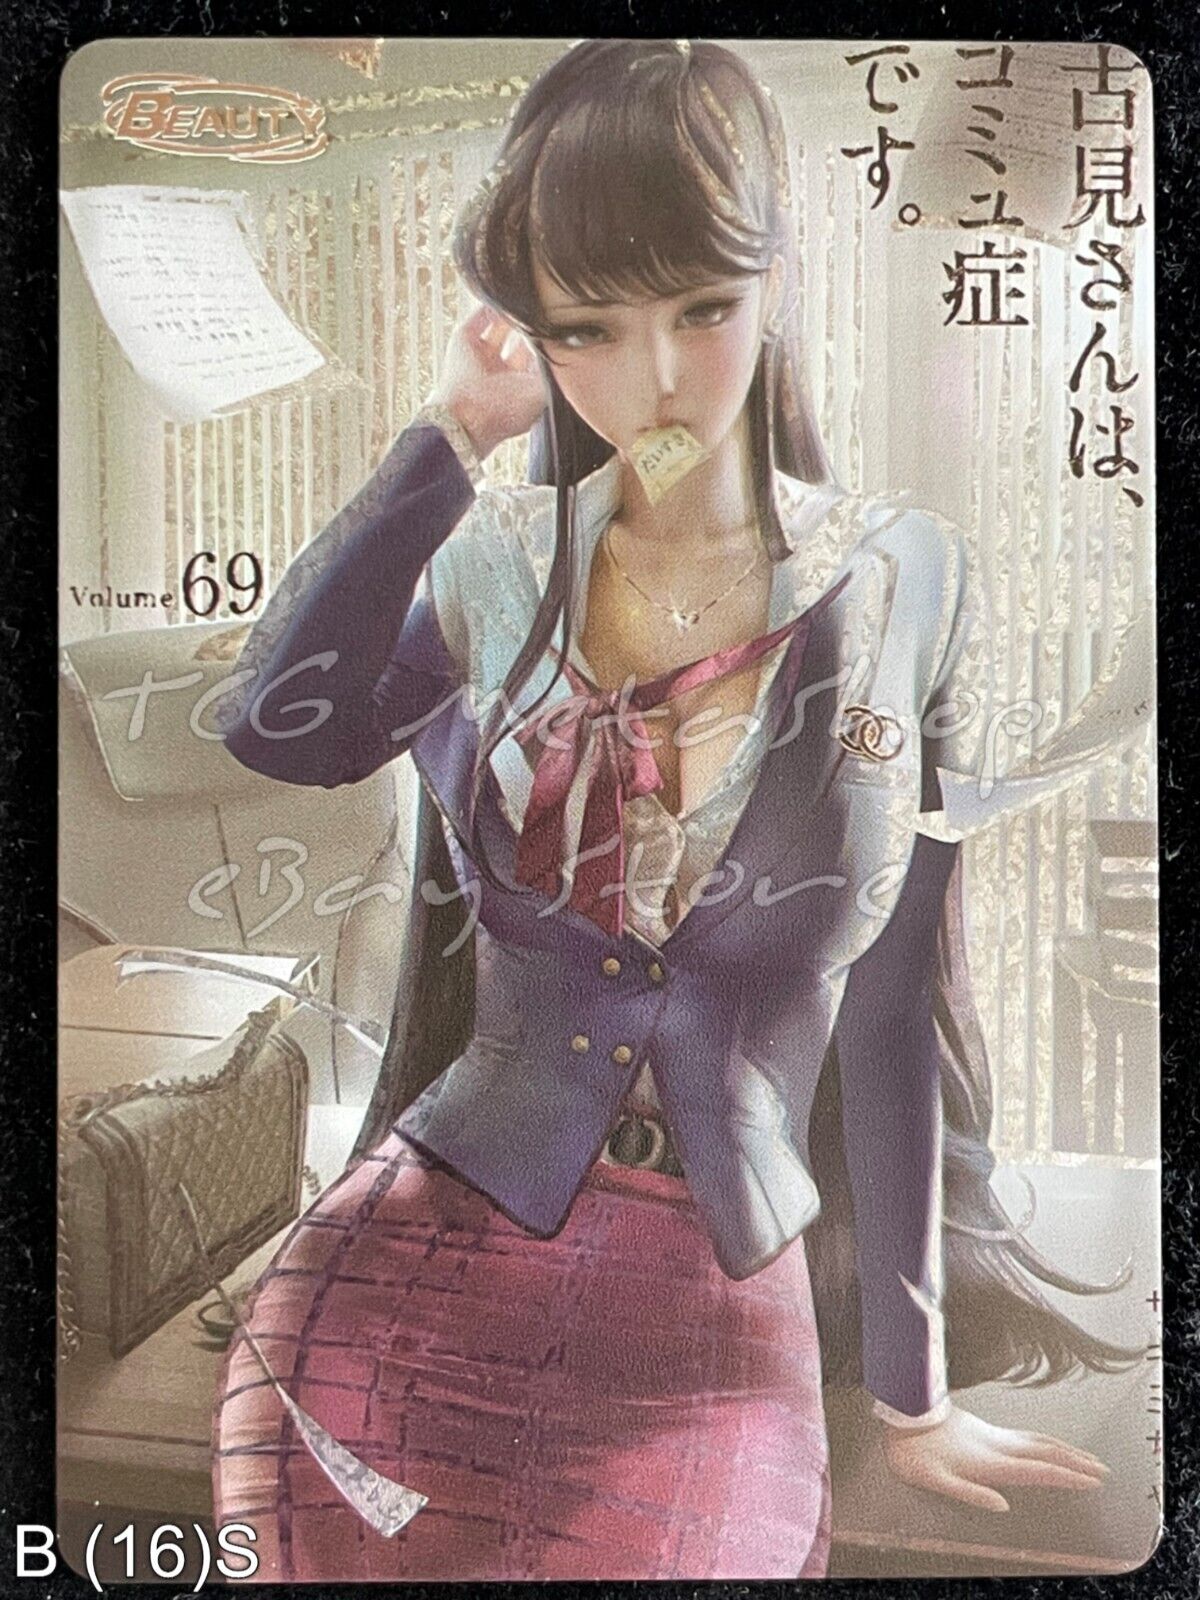 🔥 Komi Can't Communicate Goddess Story Anime Waifu Card ACG B 16 🔥